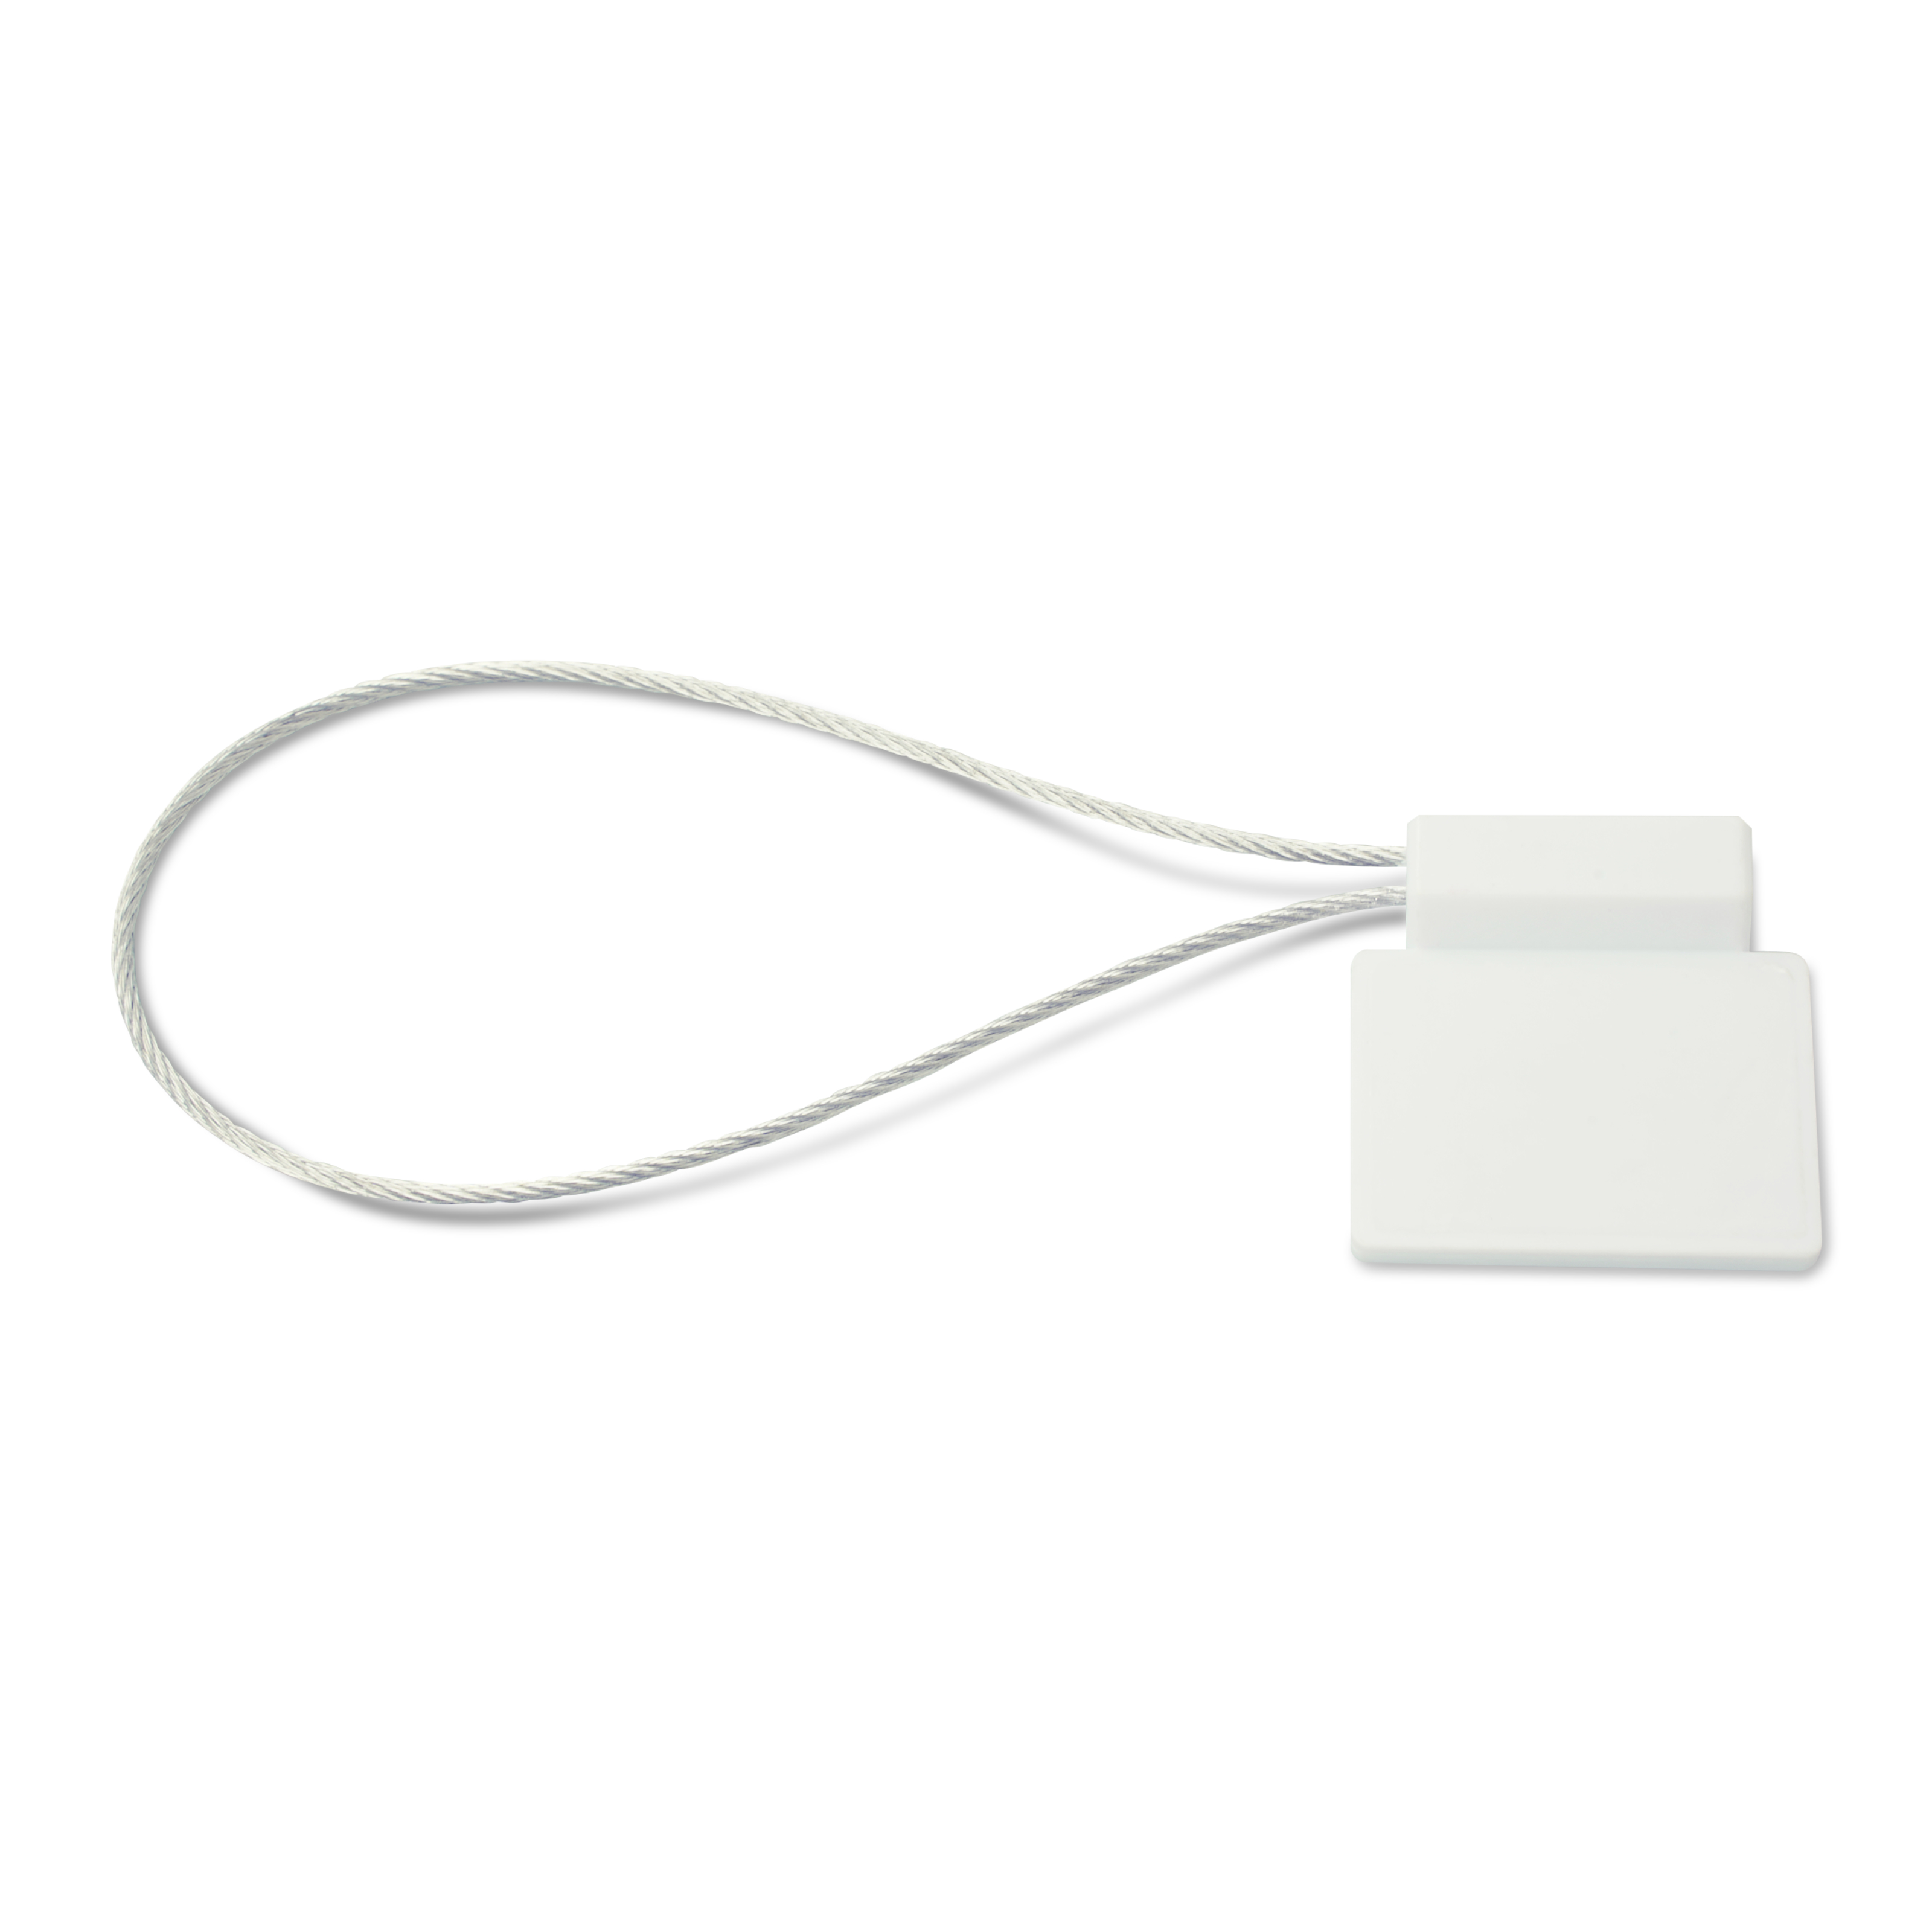 Seitlich liegende NFC Plombe mit Stahlschlaufe aus ABS in weiß